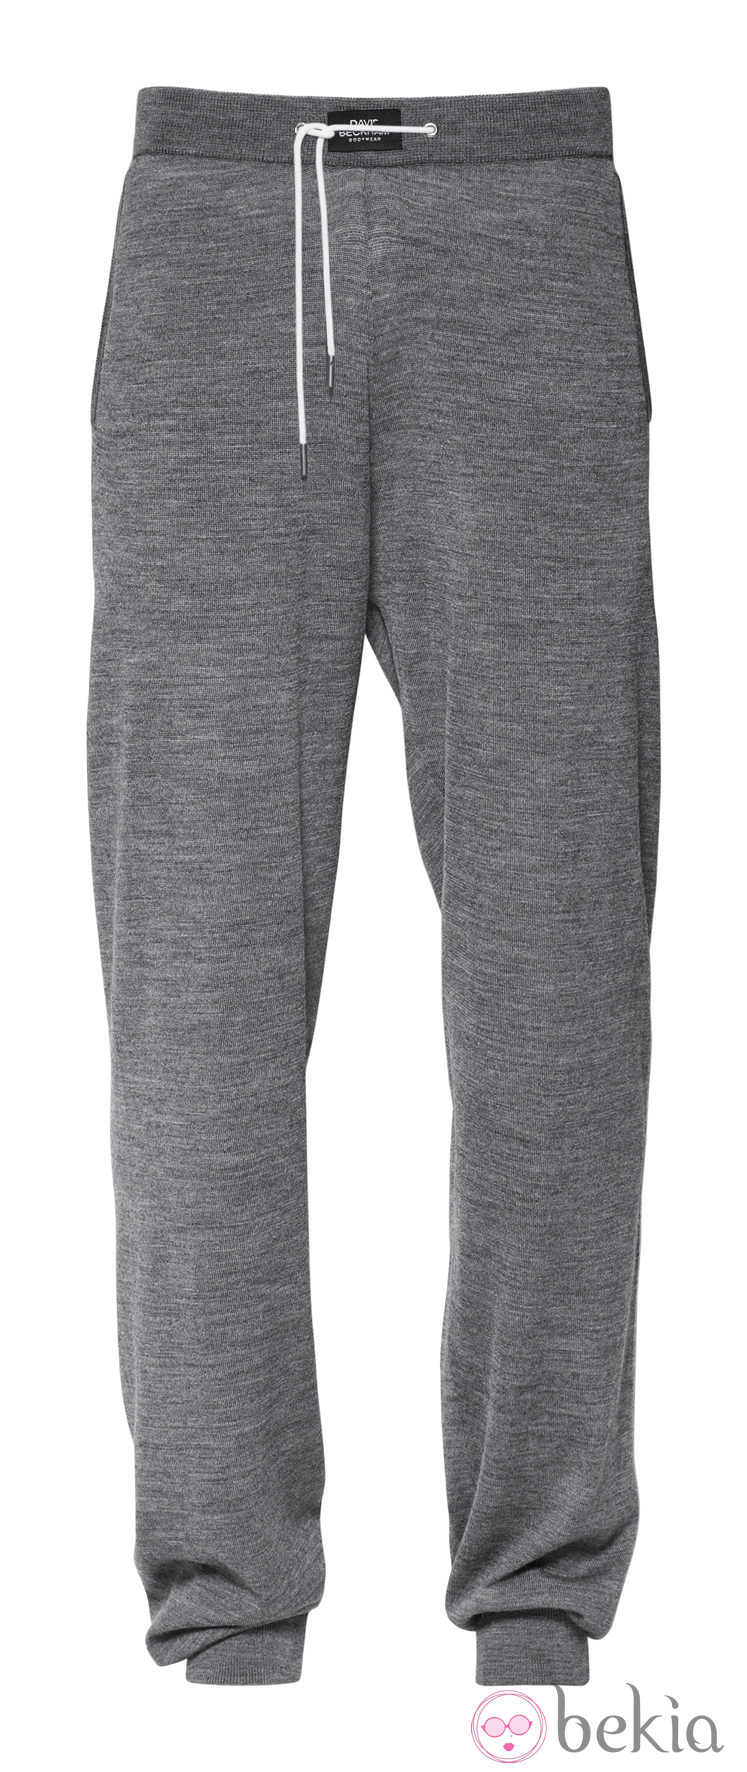 Pantalón gris de la colección otoño/invierno 2013/2014 Bodywear de David Beckham para H&M